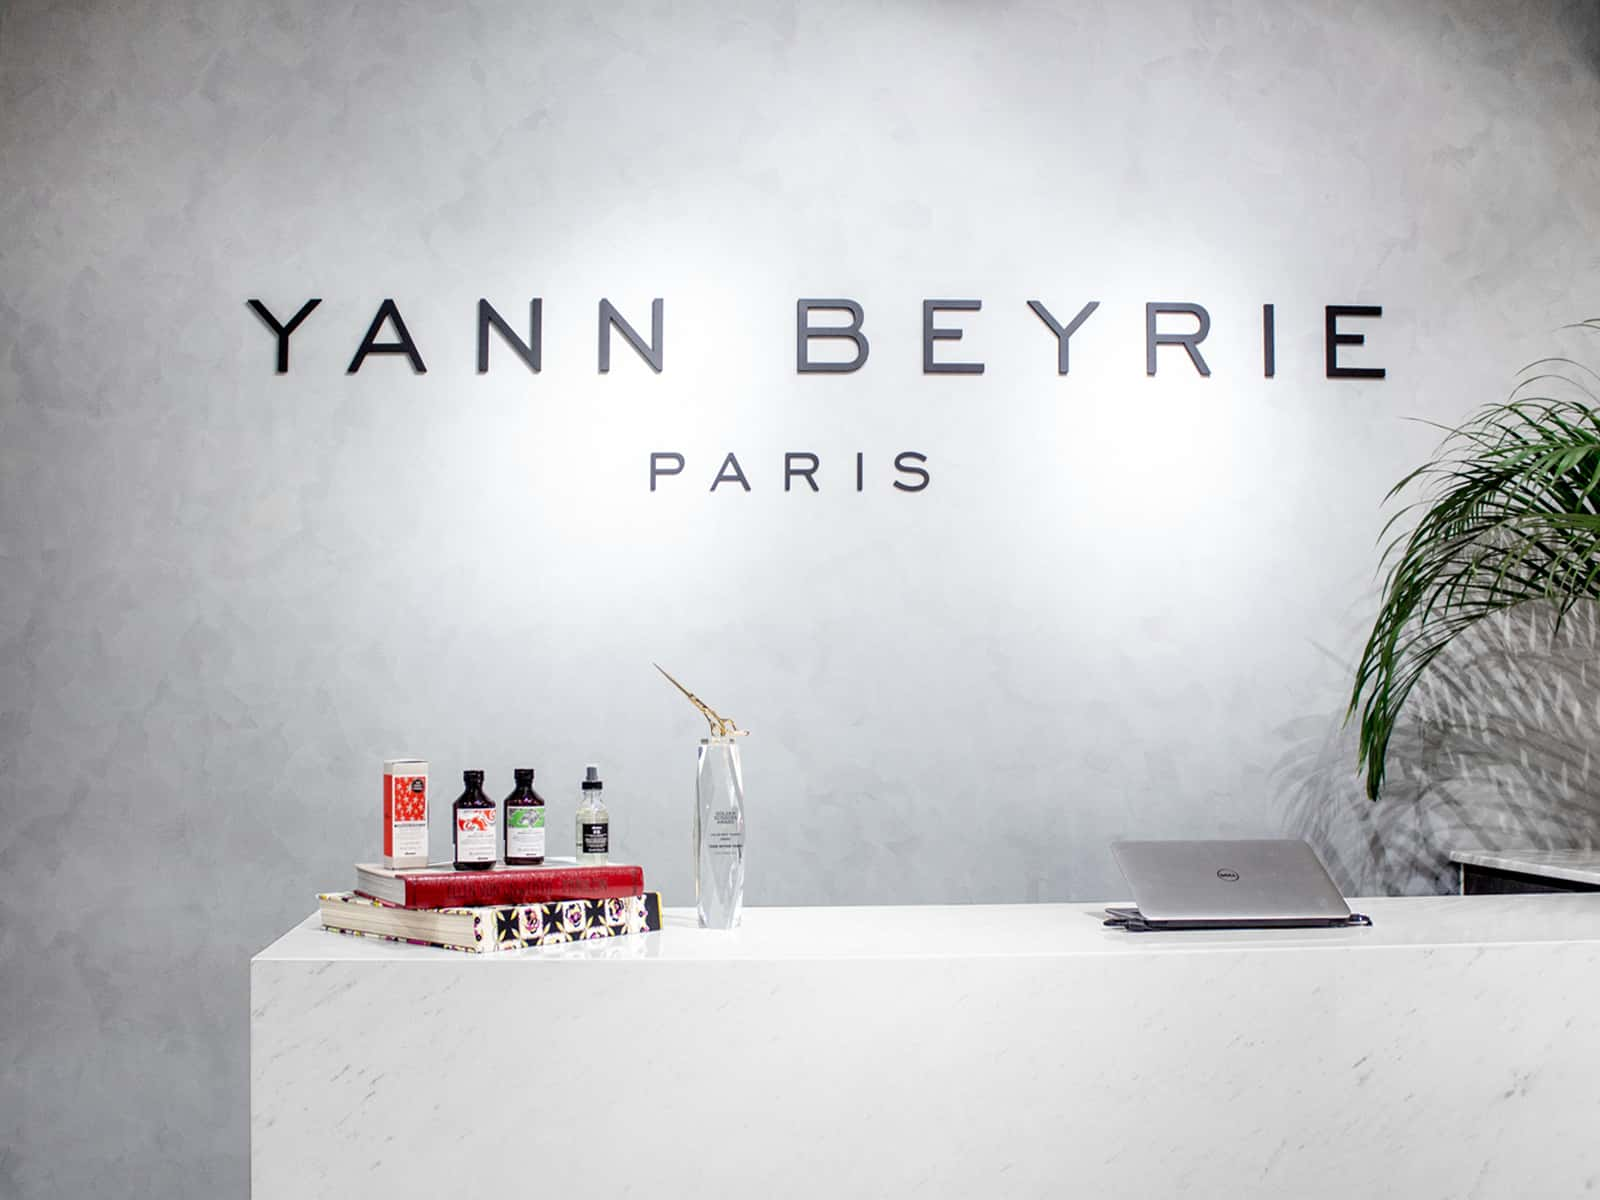 Yann Beyrie